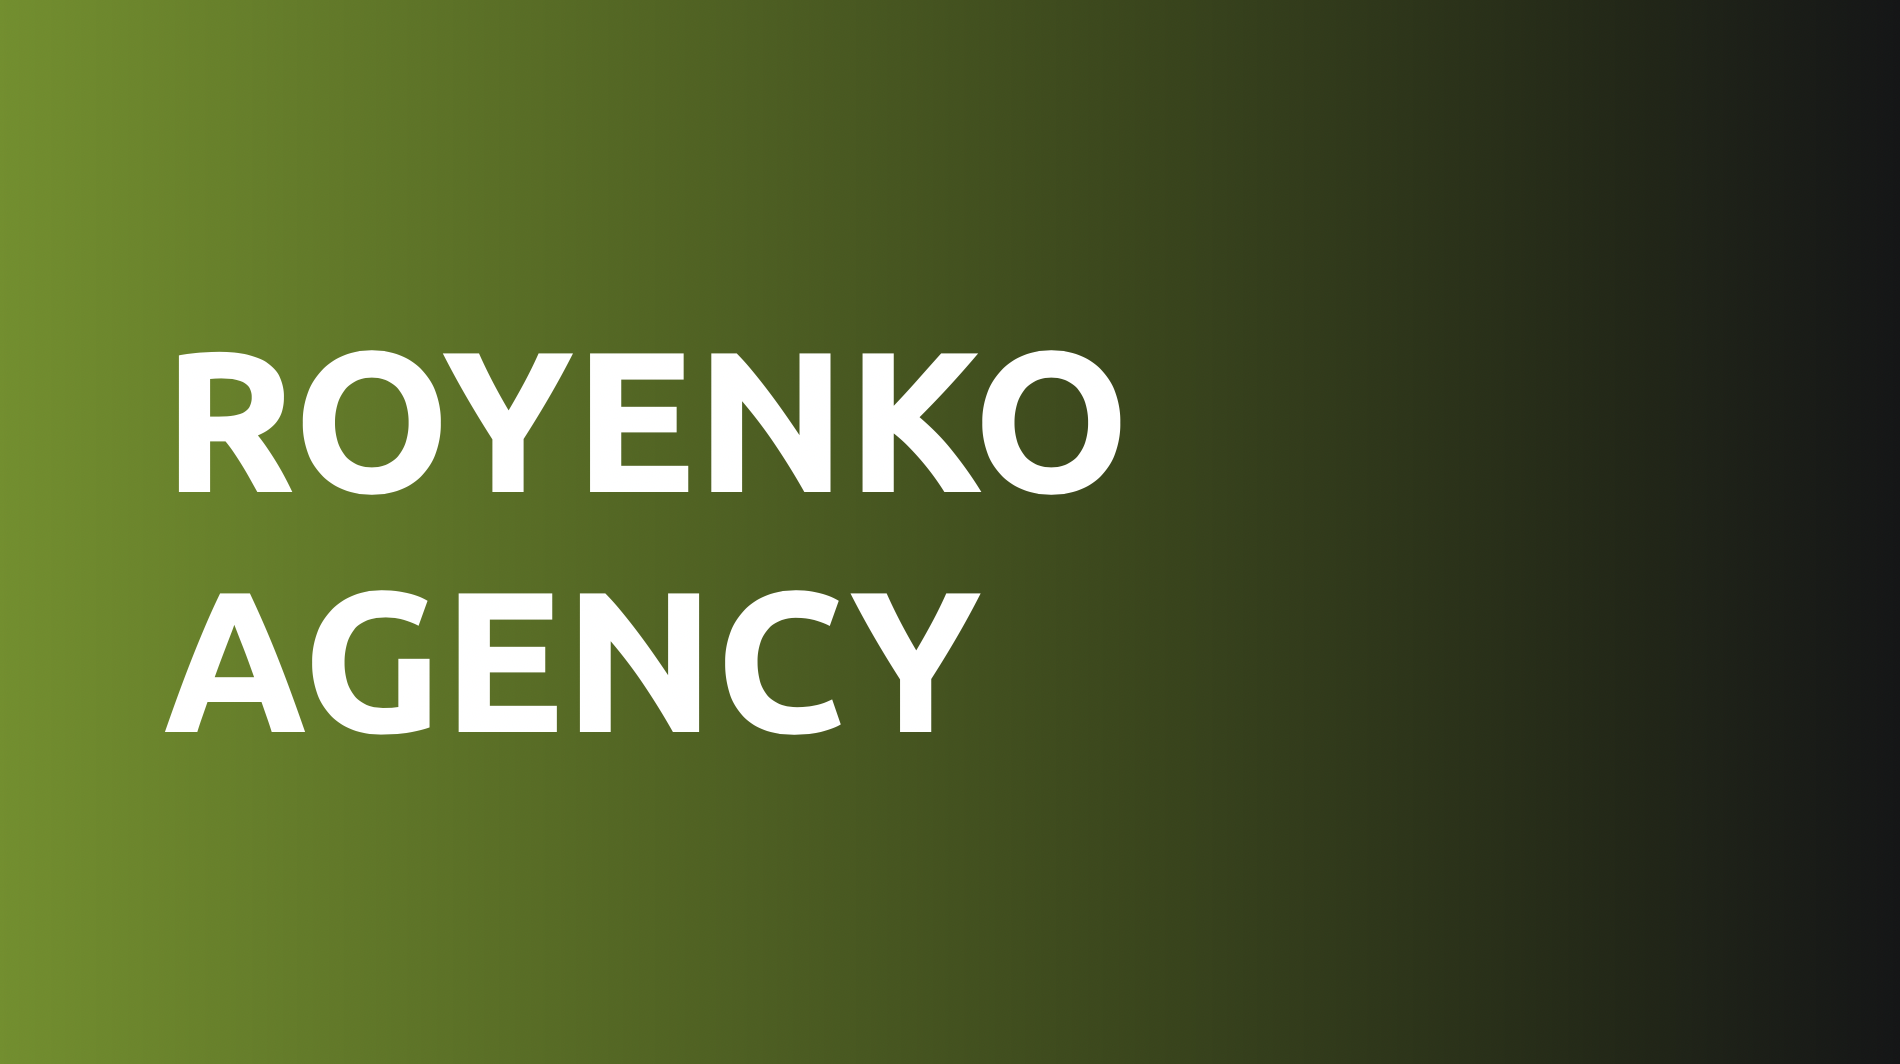 Royenko Agency